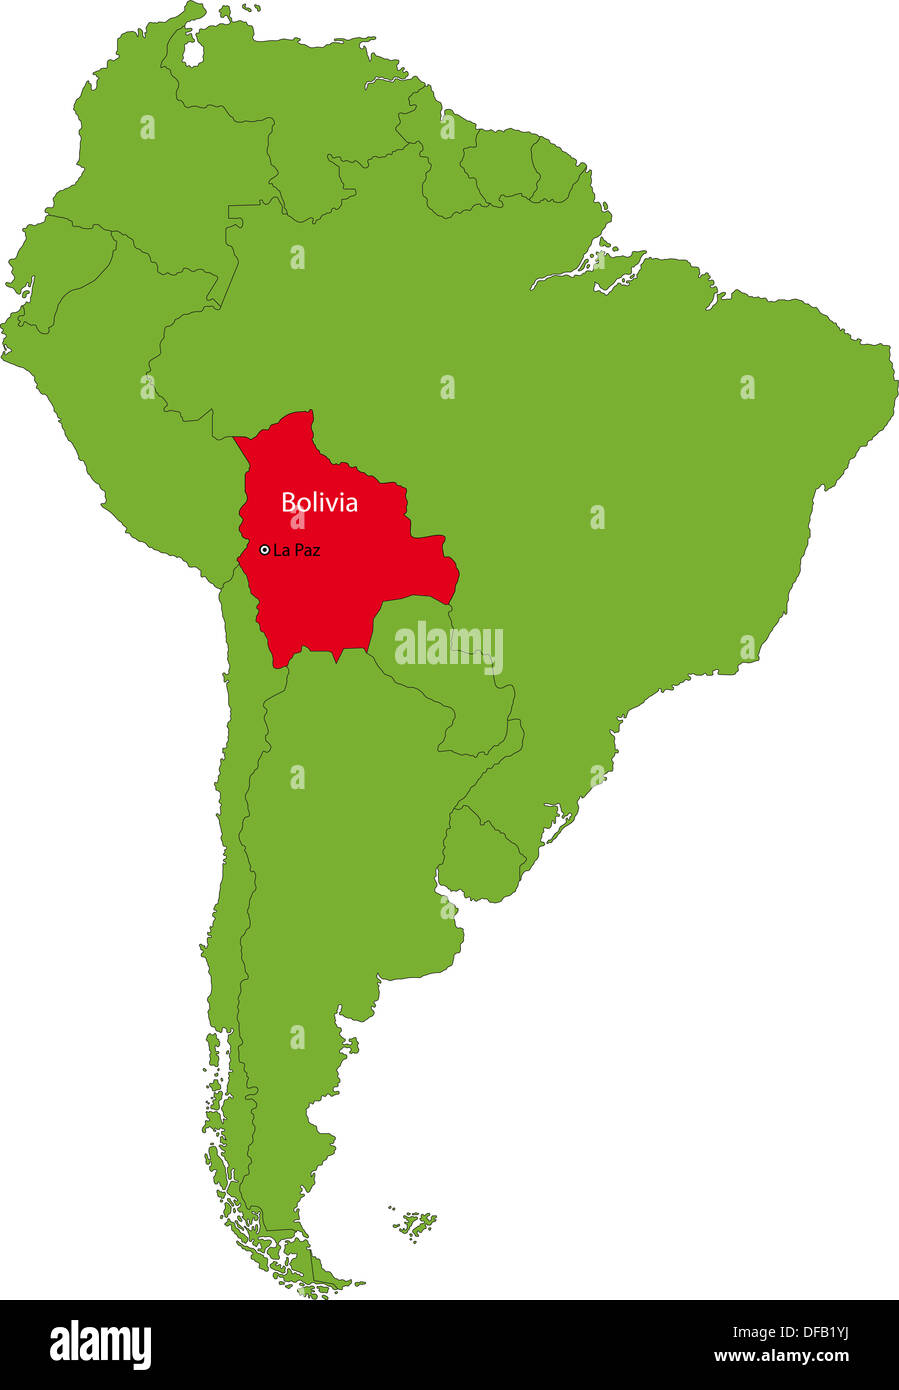 Bolivia map Stock Photo